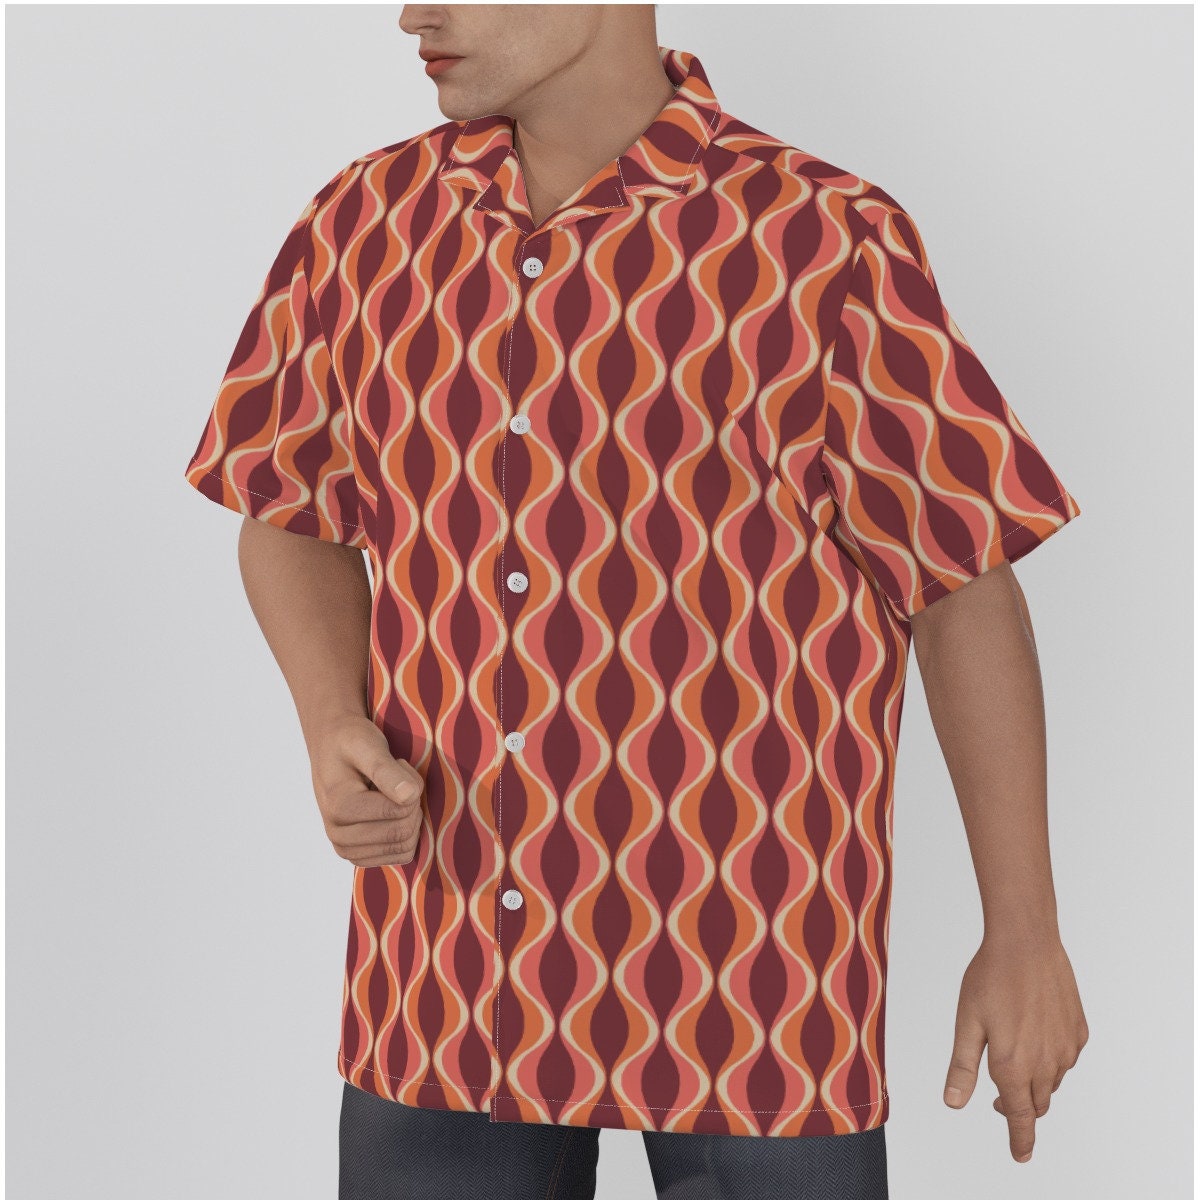 Chemise rétro hommes, haut rétro, haut de style du milieu du siècle, chemise de style Mod des années 60, haut de style vintage, chemise marron, chemise hawaïenne, chemise habillée